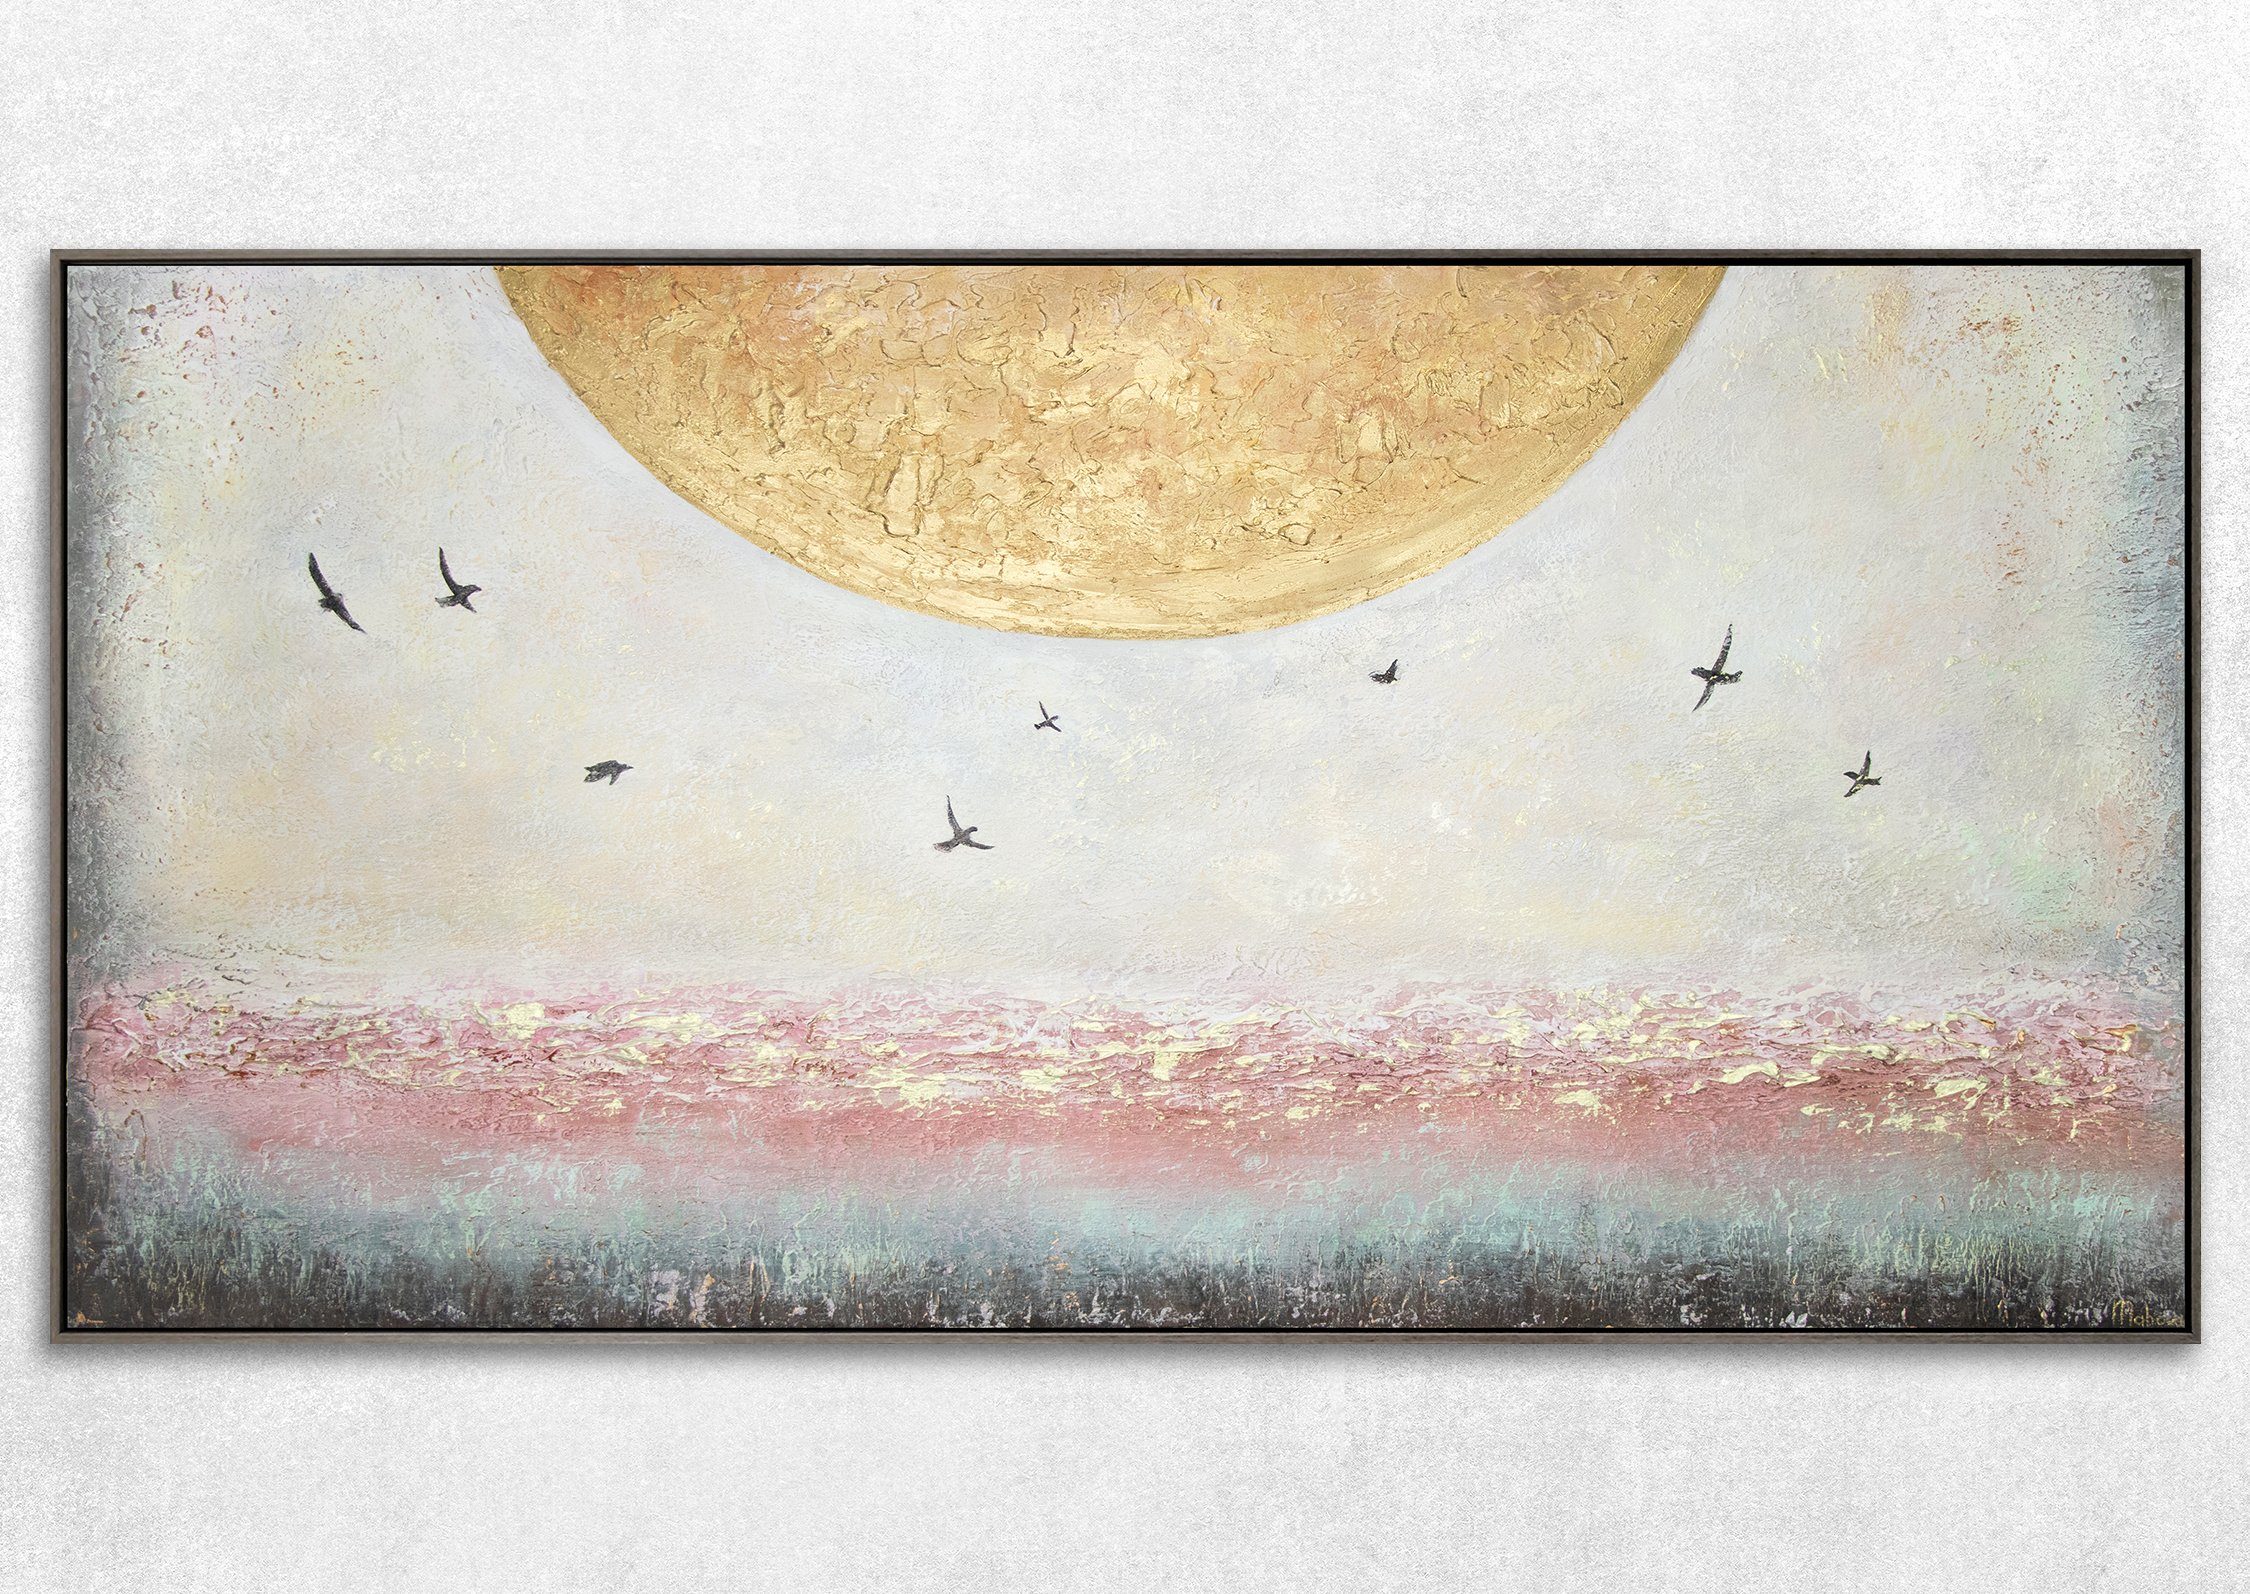 YS-Art Gemälde Handgemalt Vögel Grau Sonne Rahmen Gold Mit Süden Leinwand Bild in Landschaft, Sonnenenergie